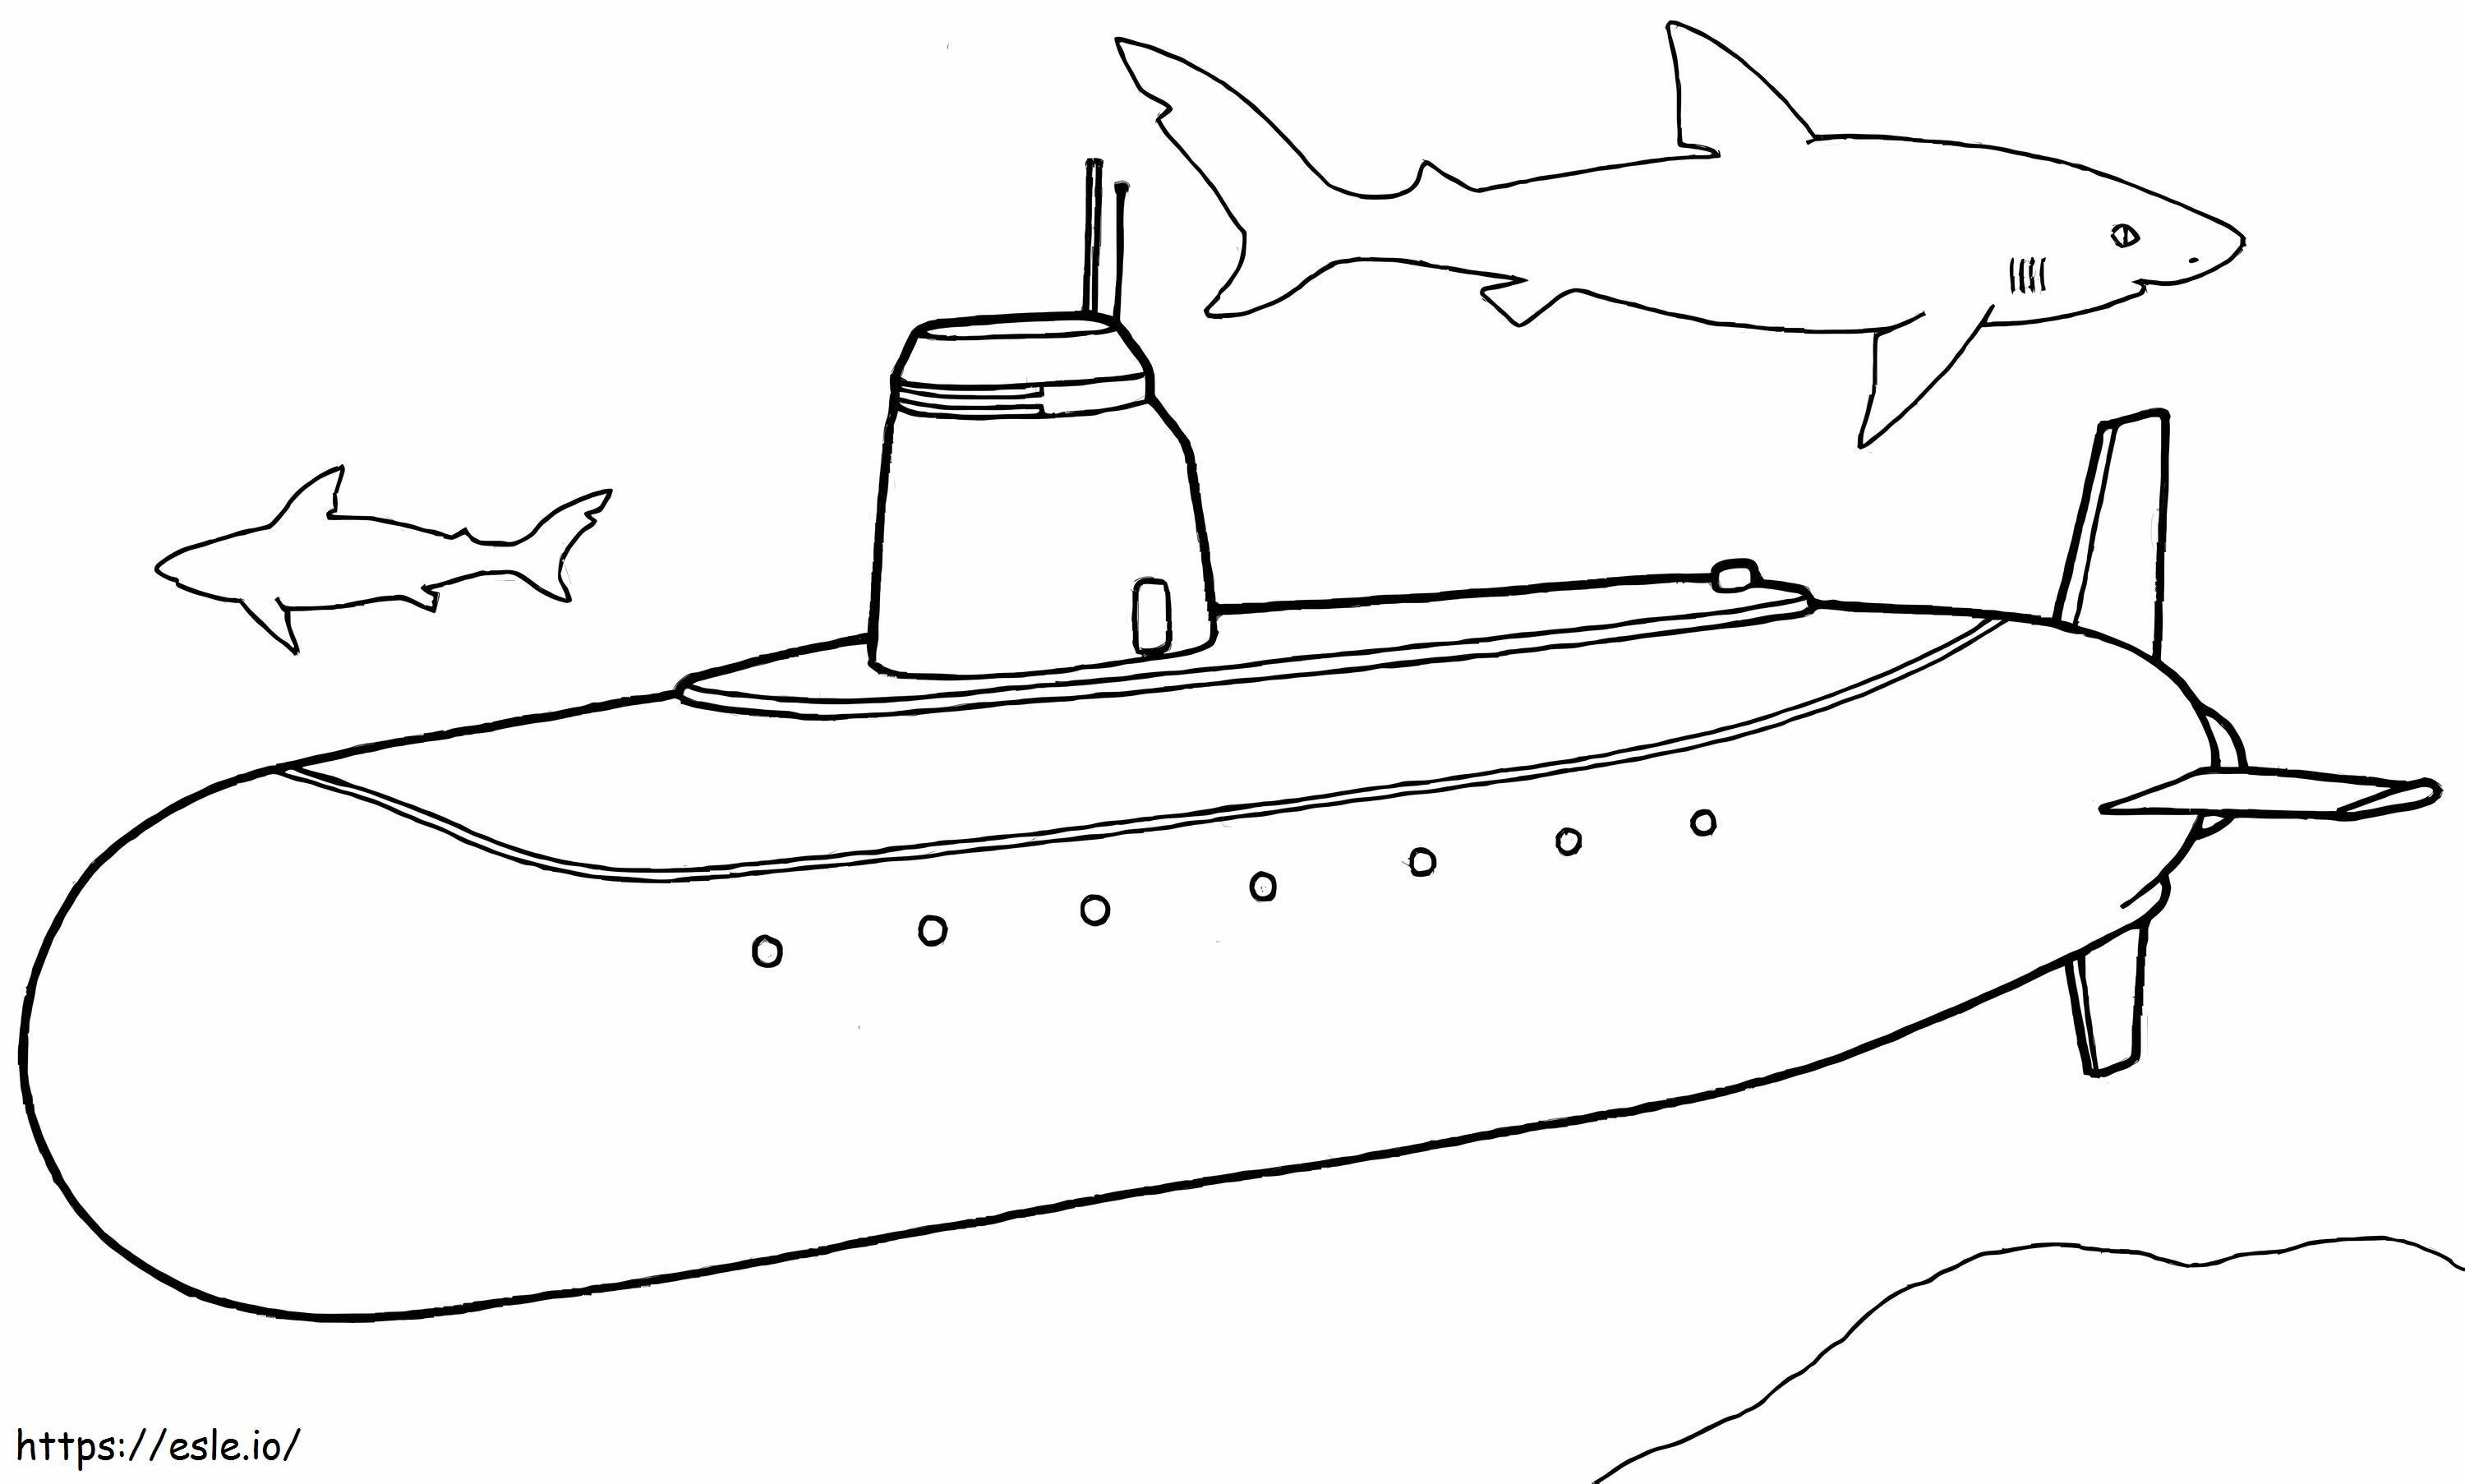 Submarin și doi rechini de colorat